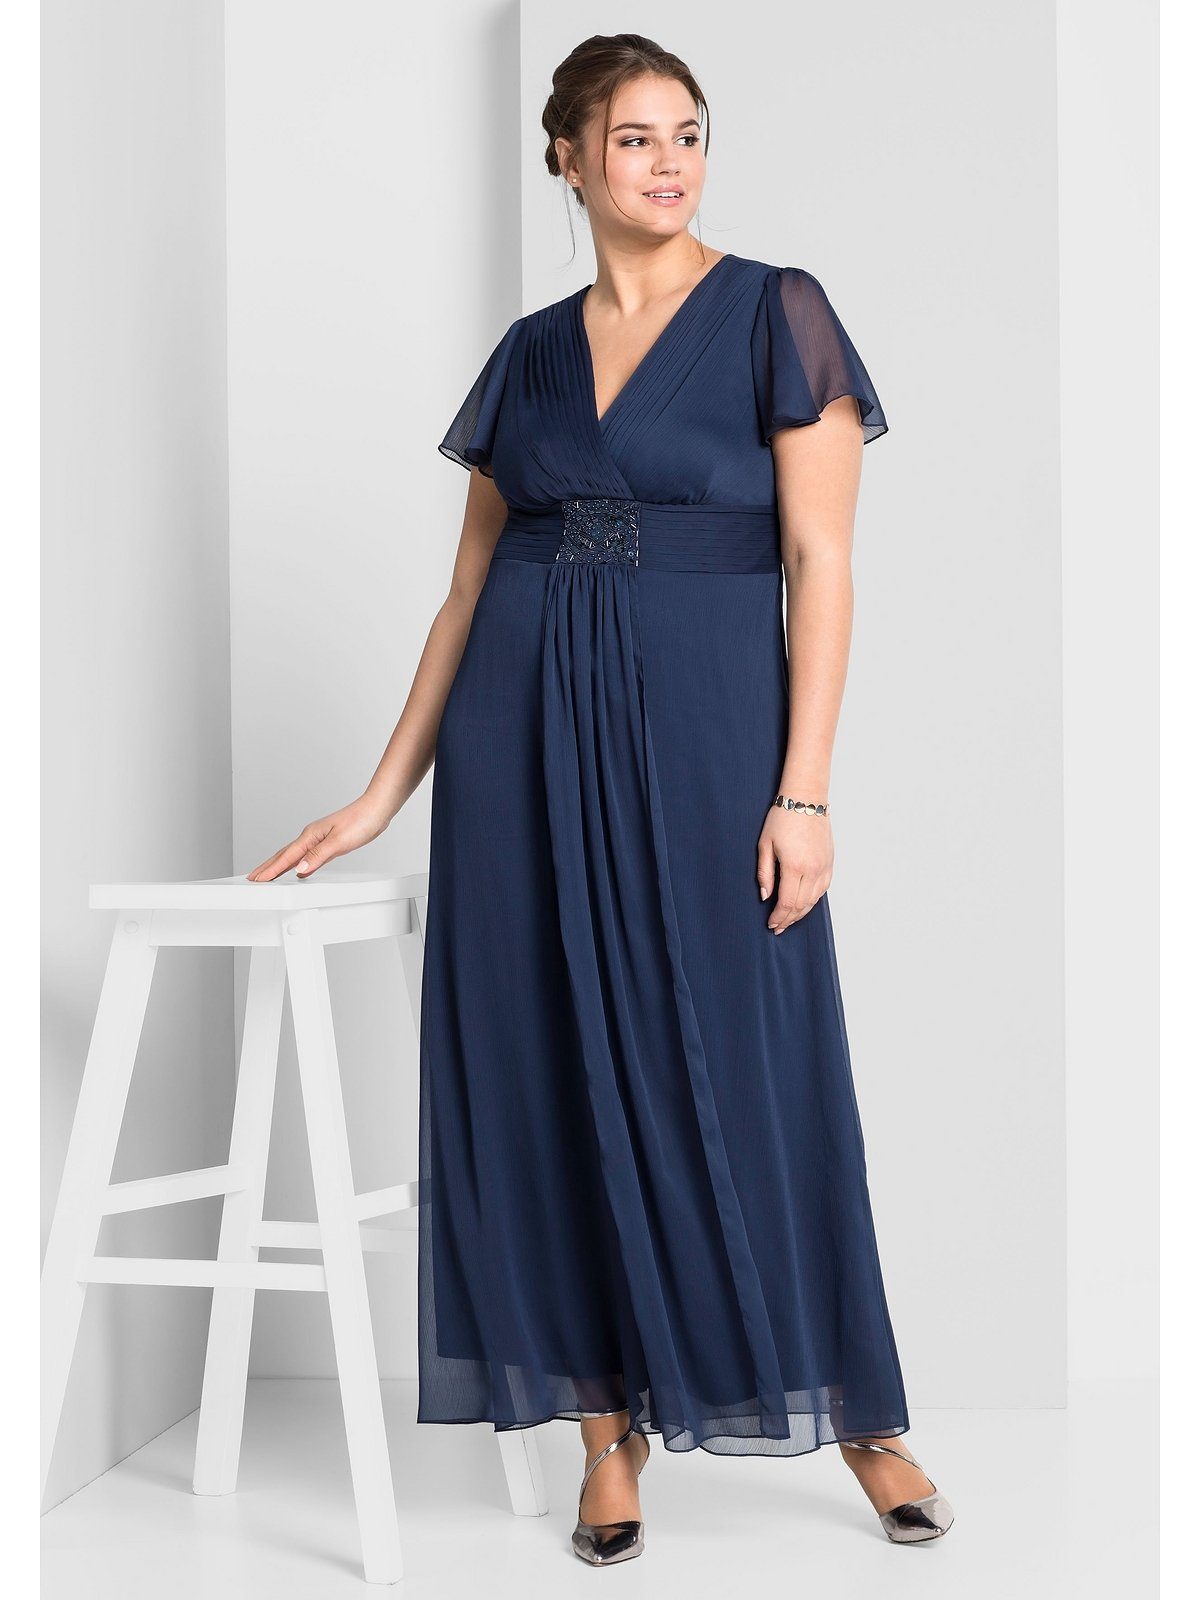 Blaue festliche Kleider für Damen online kaufen | OTTO